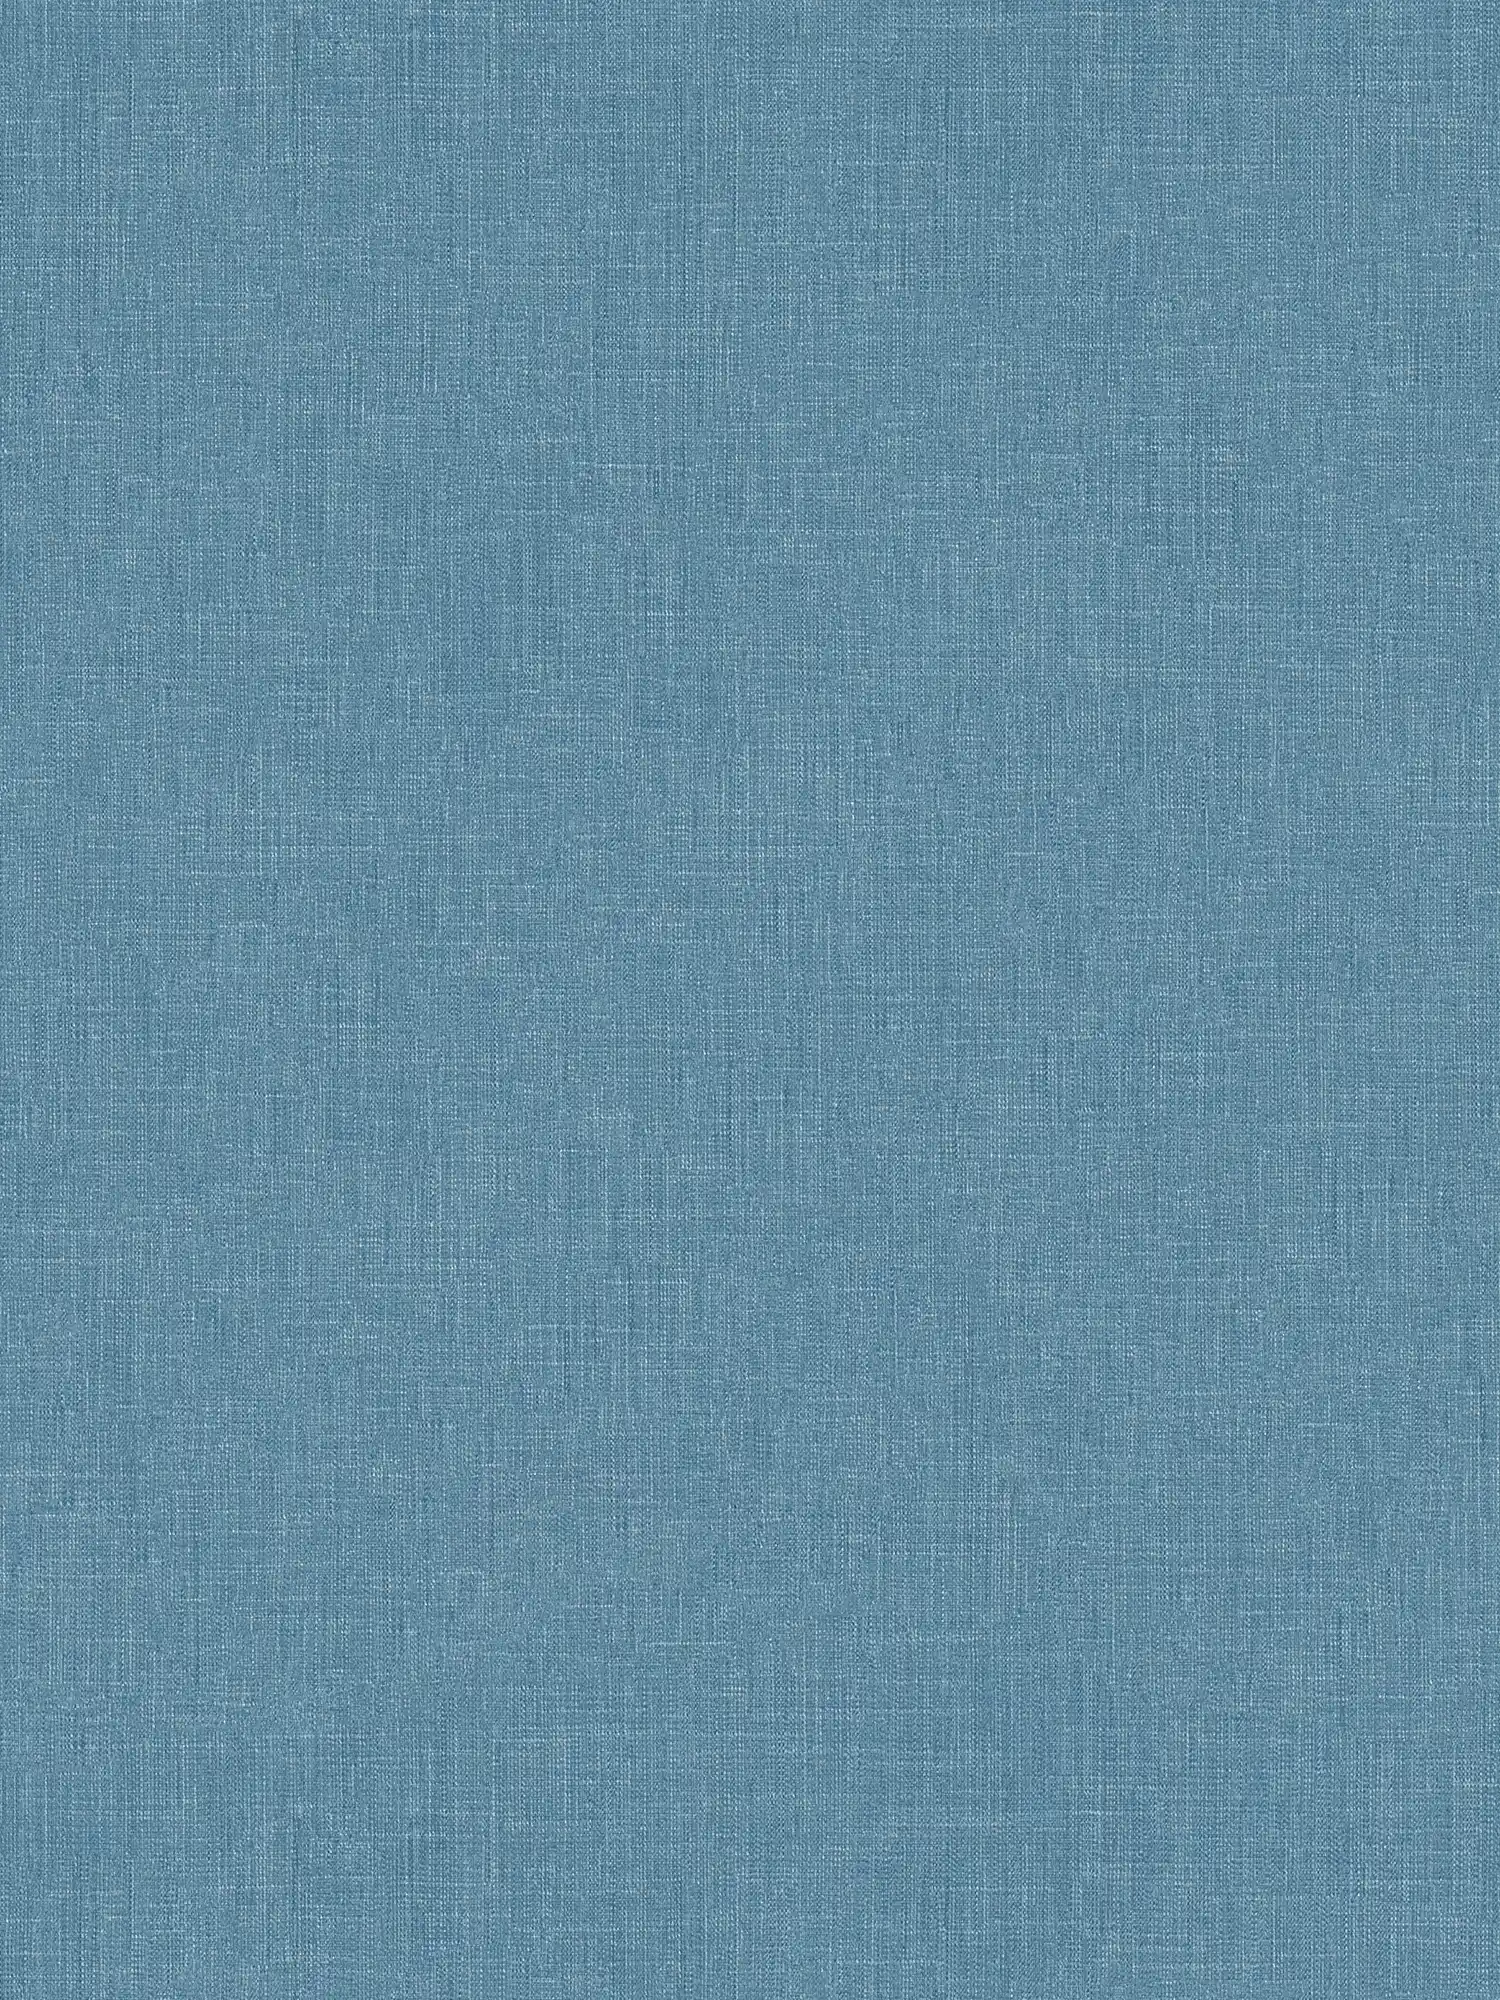 Carta da parati blu petrolio con disegno tessile screziato in stile Scandi
